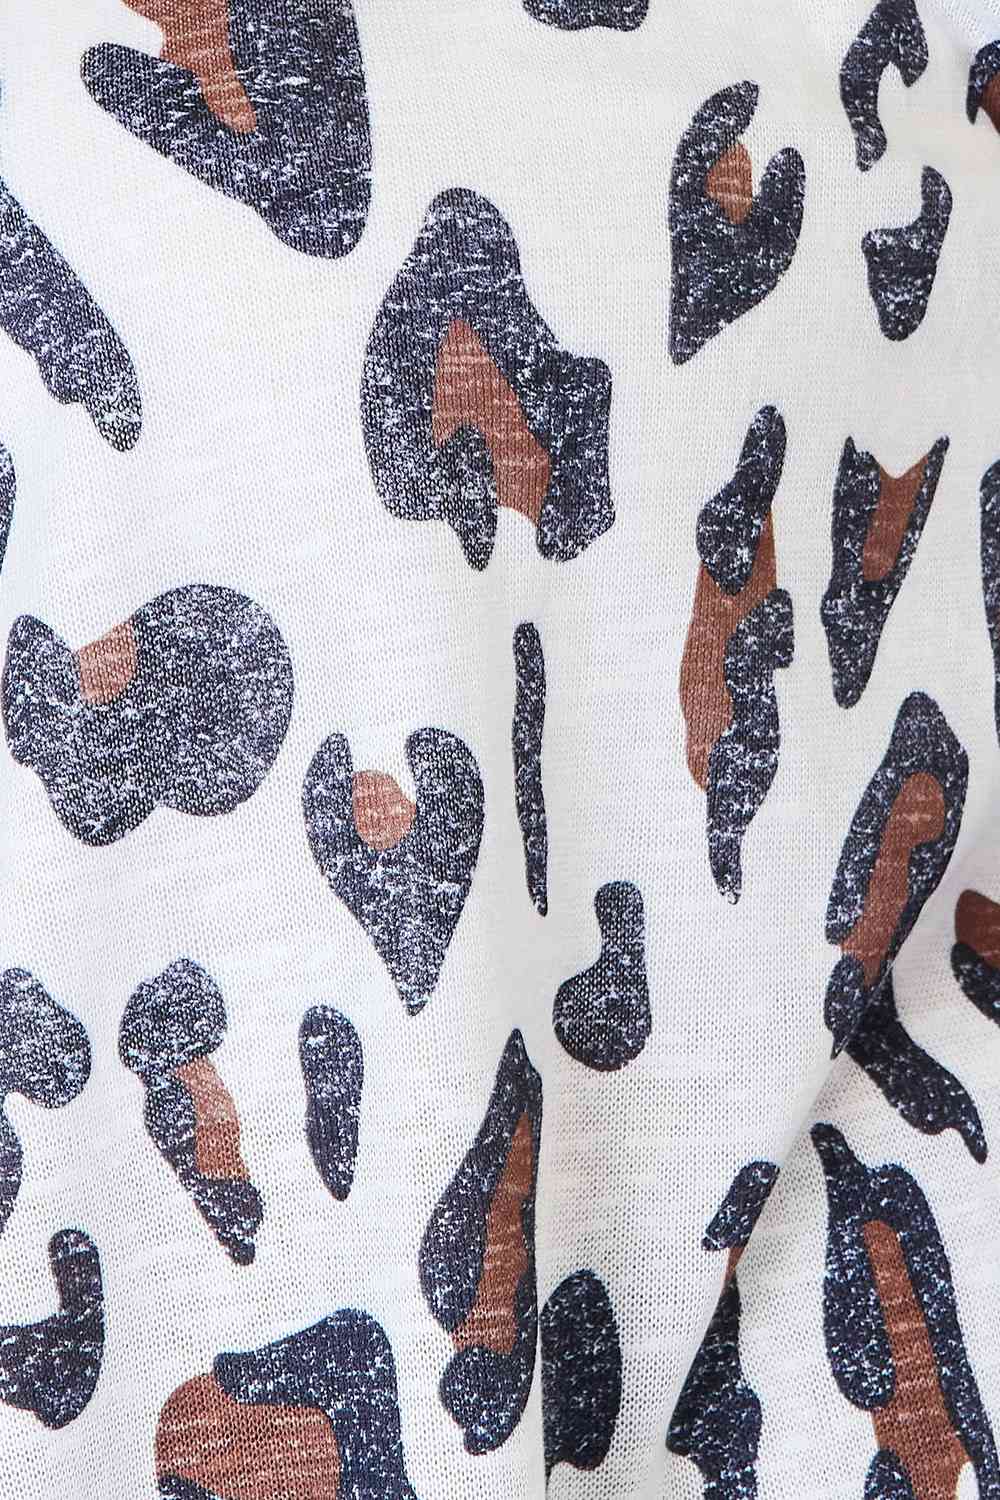 Leopard Print Long Sleeve CardiganCardiganDouble Take